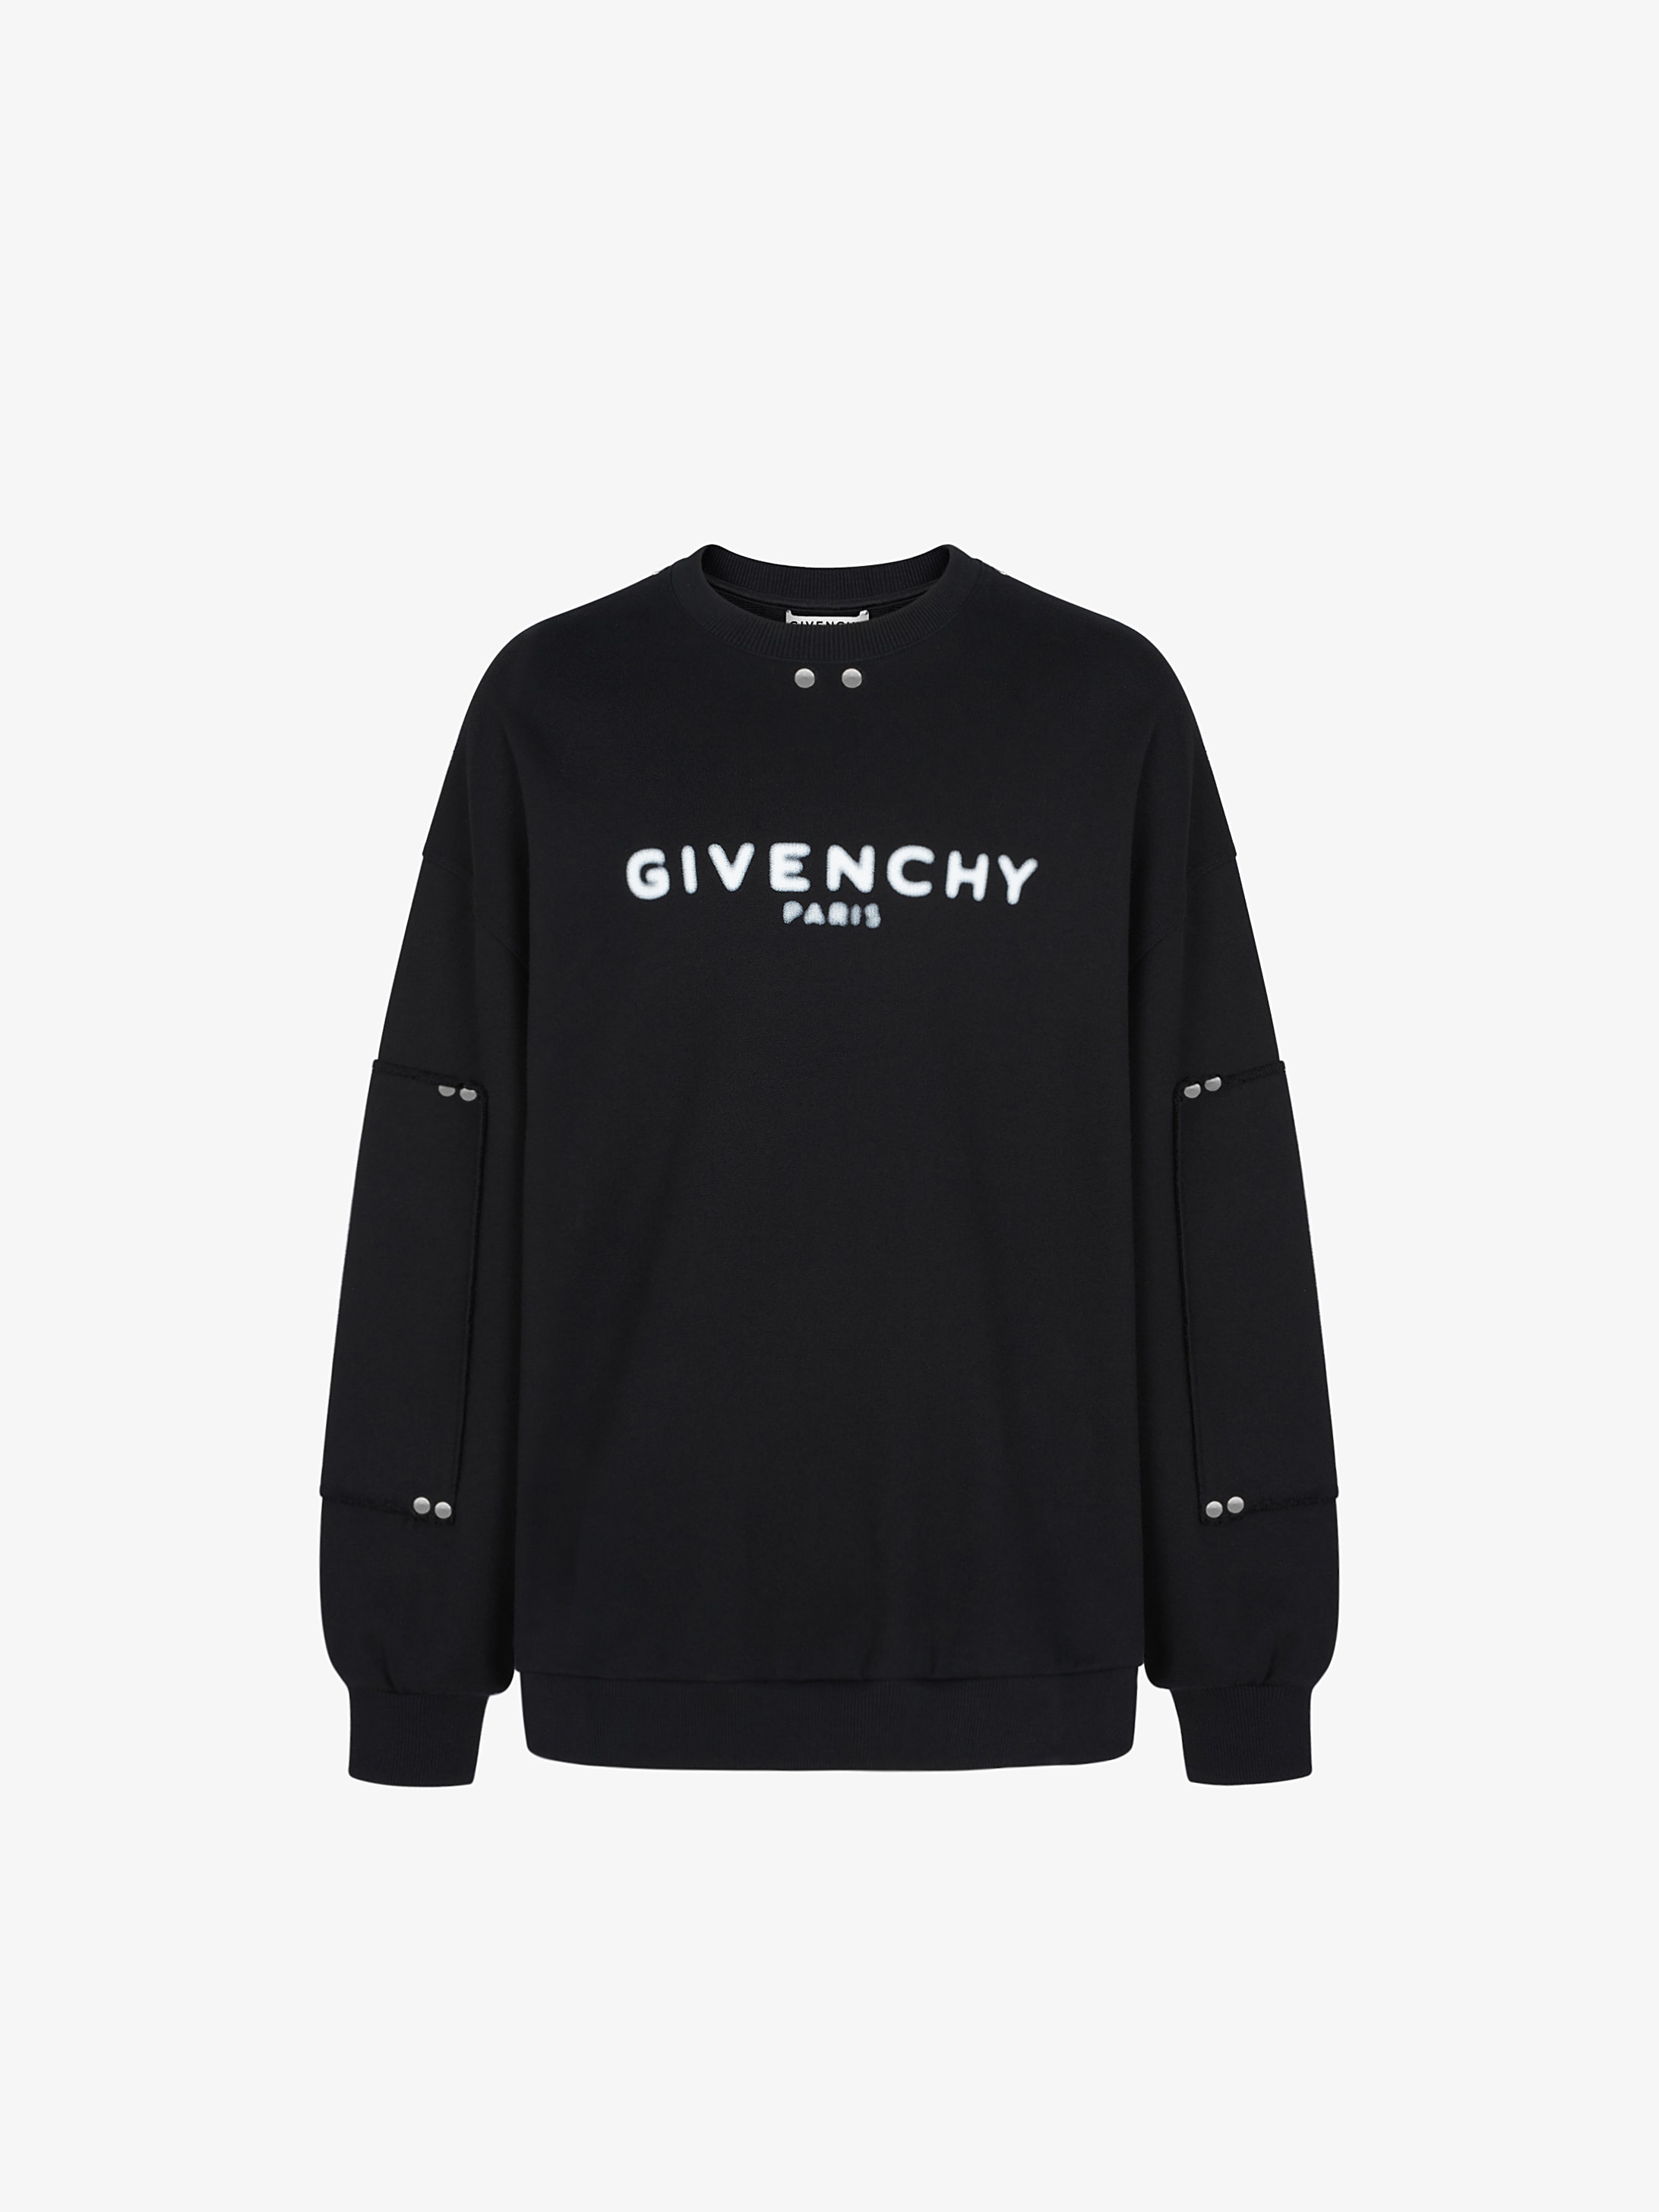 GIVENCHY sweatshirt with metallic 